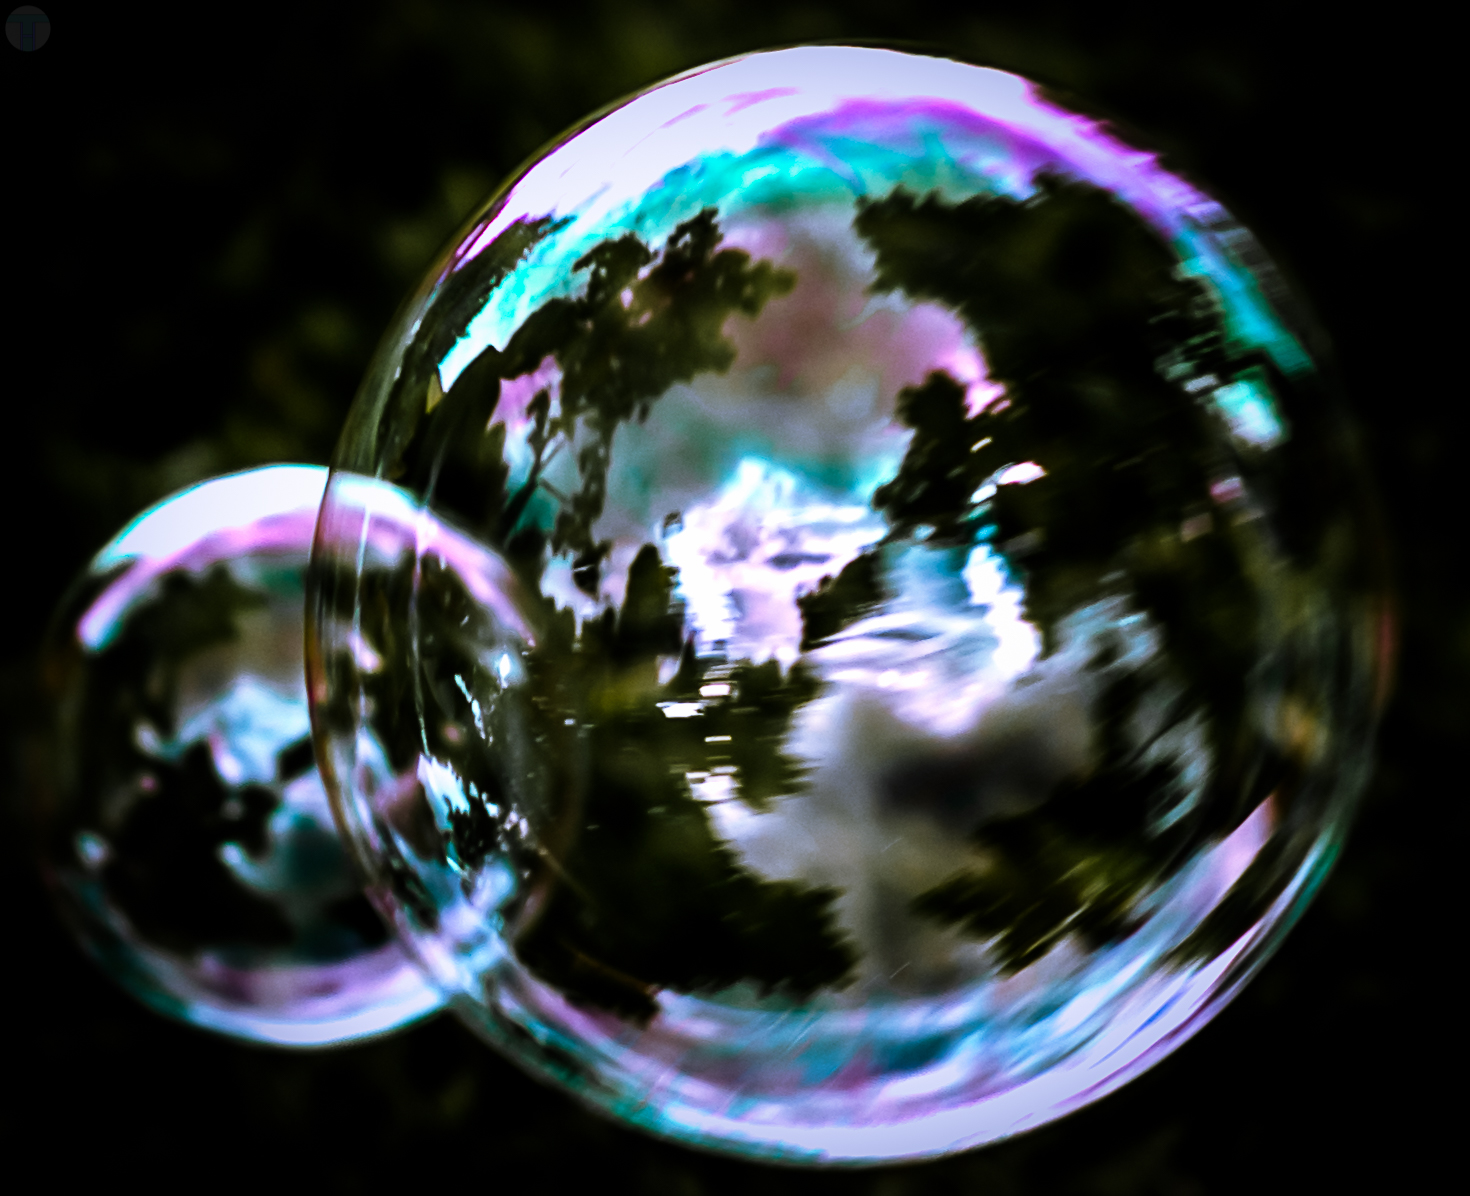 My Bubbles